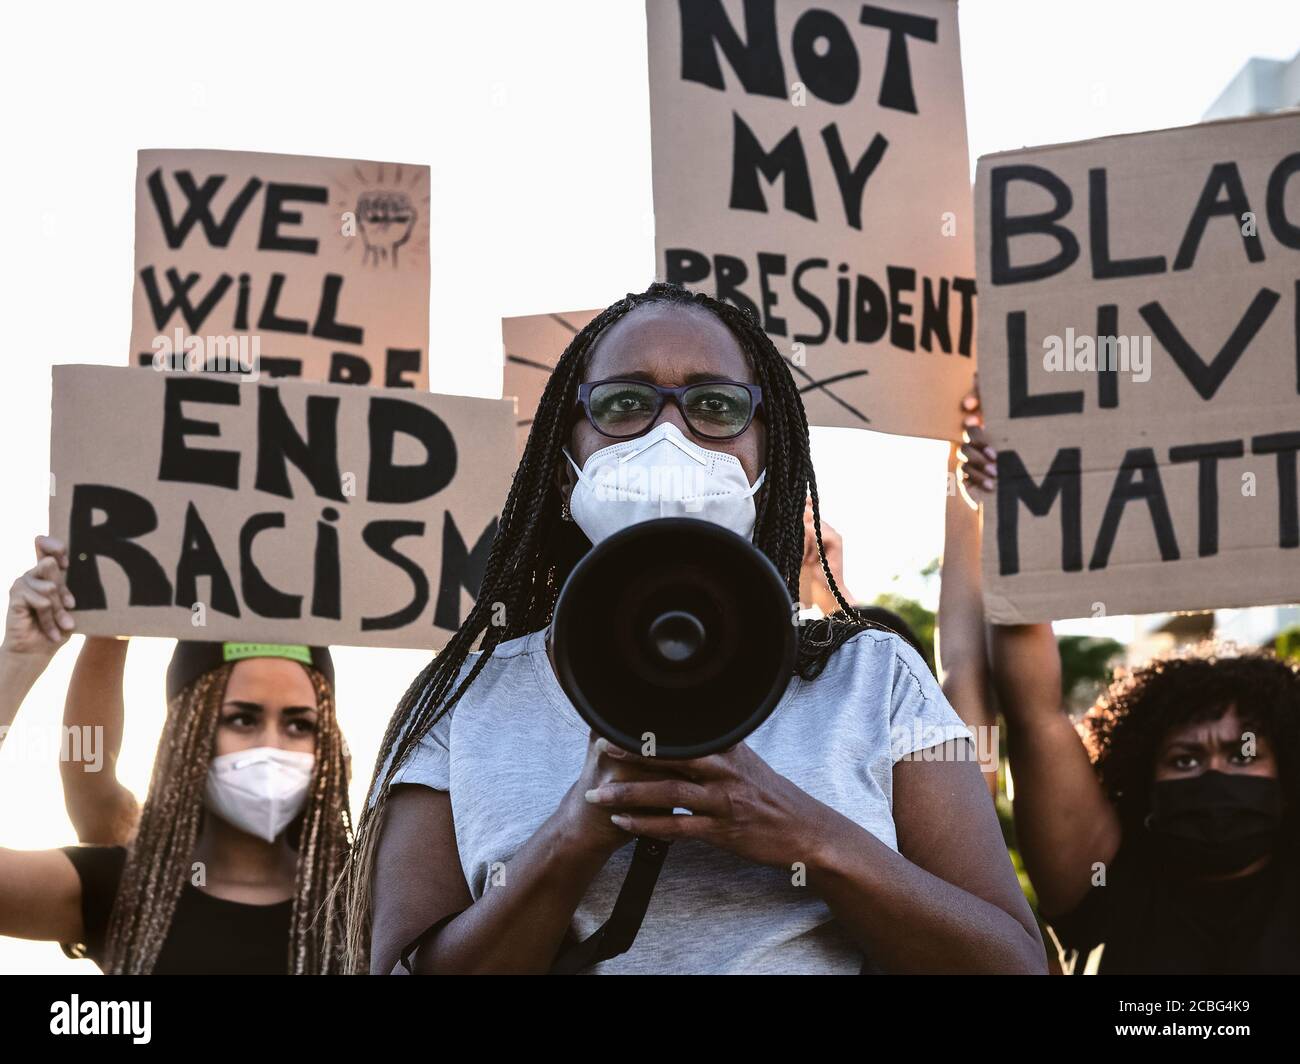 Movimento attivista che protesta contro il razzismo e la lotta per l'uguaglianza - manifestanti di culture diverse e proteste razziali sulla strada Foto Stock